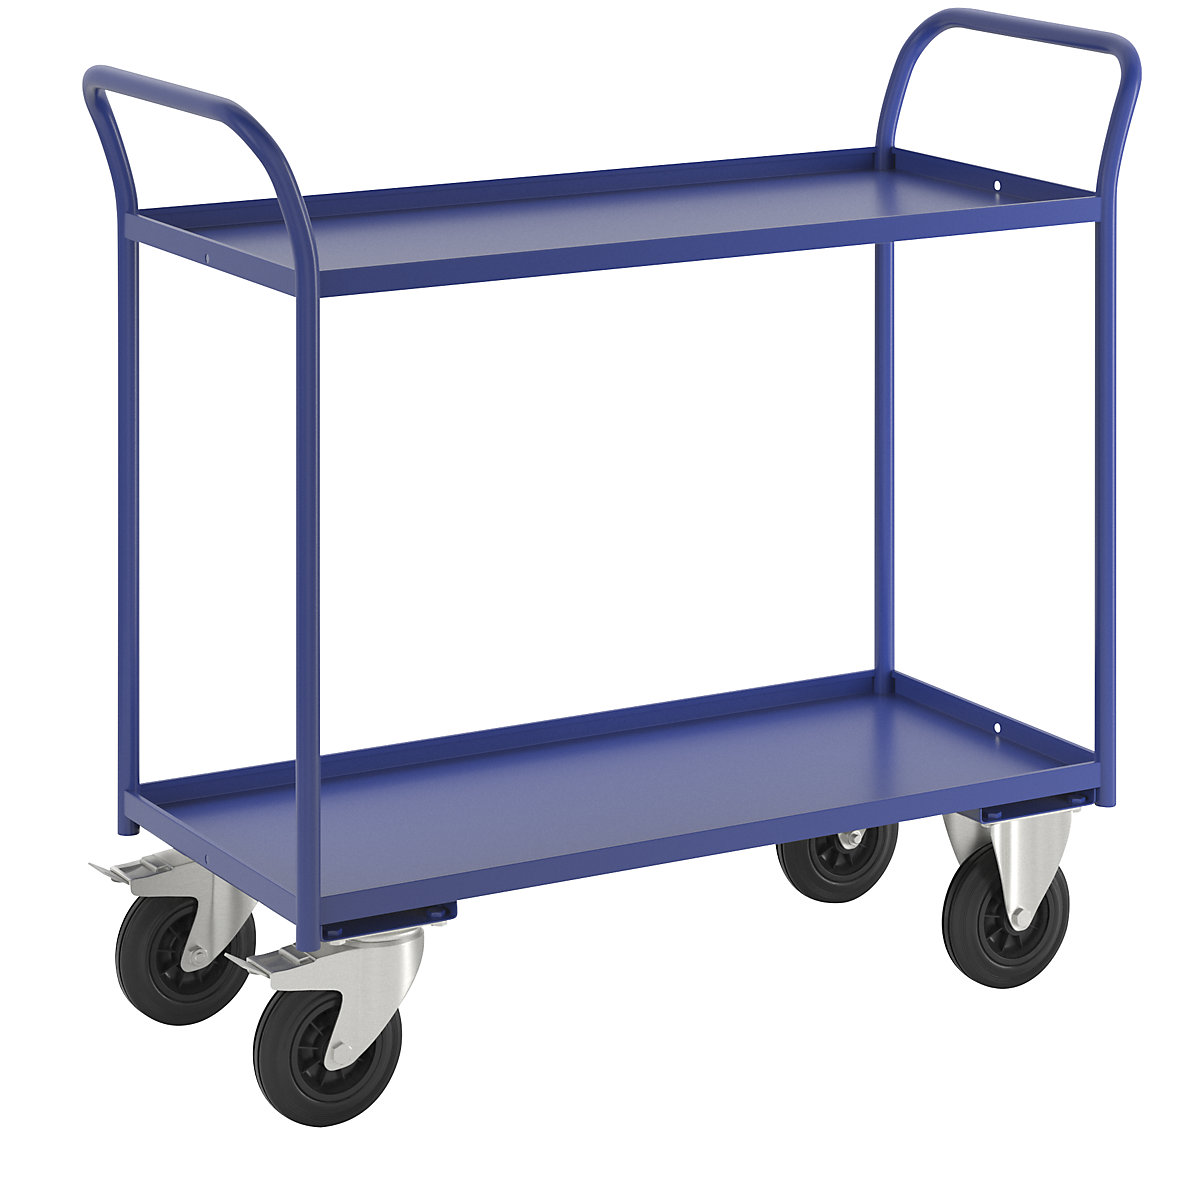 Stolový vozík KM41 – Kongamek, 2 etáže se zvýšenou hranou, d x š x v 1080 x 450 x 1000 mm, modrá, 2 otočná kola s brzdou, 2 pevná kola-4